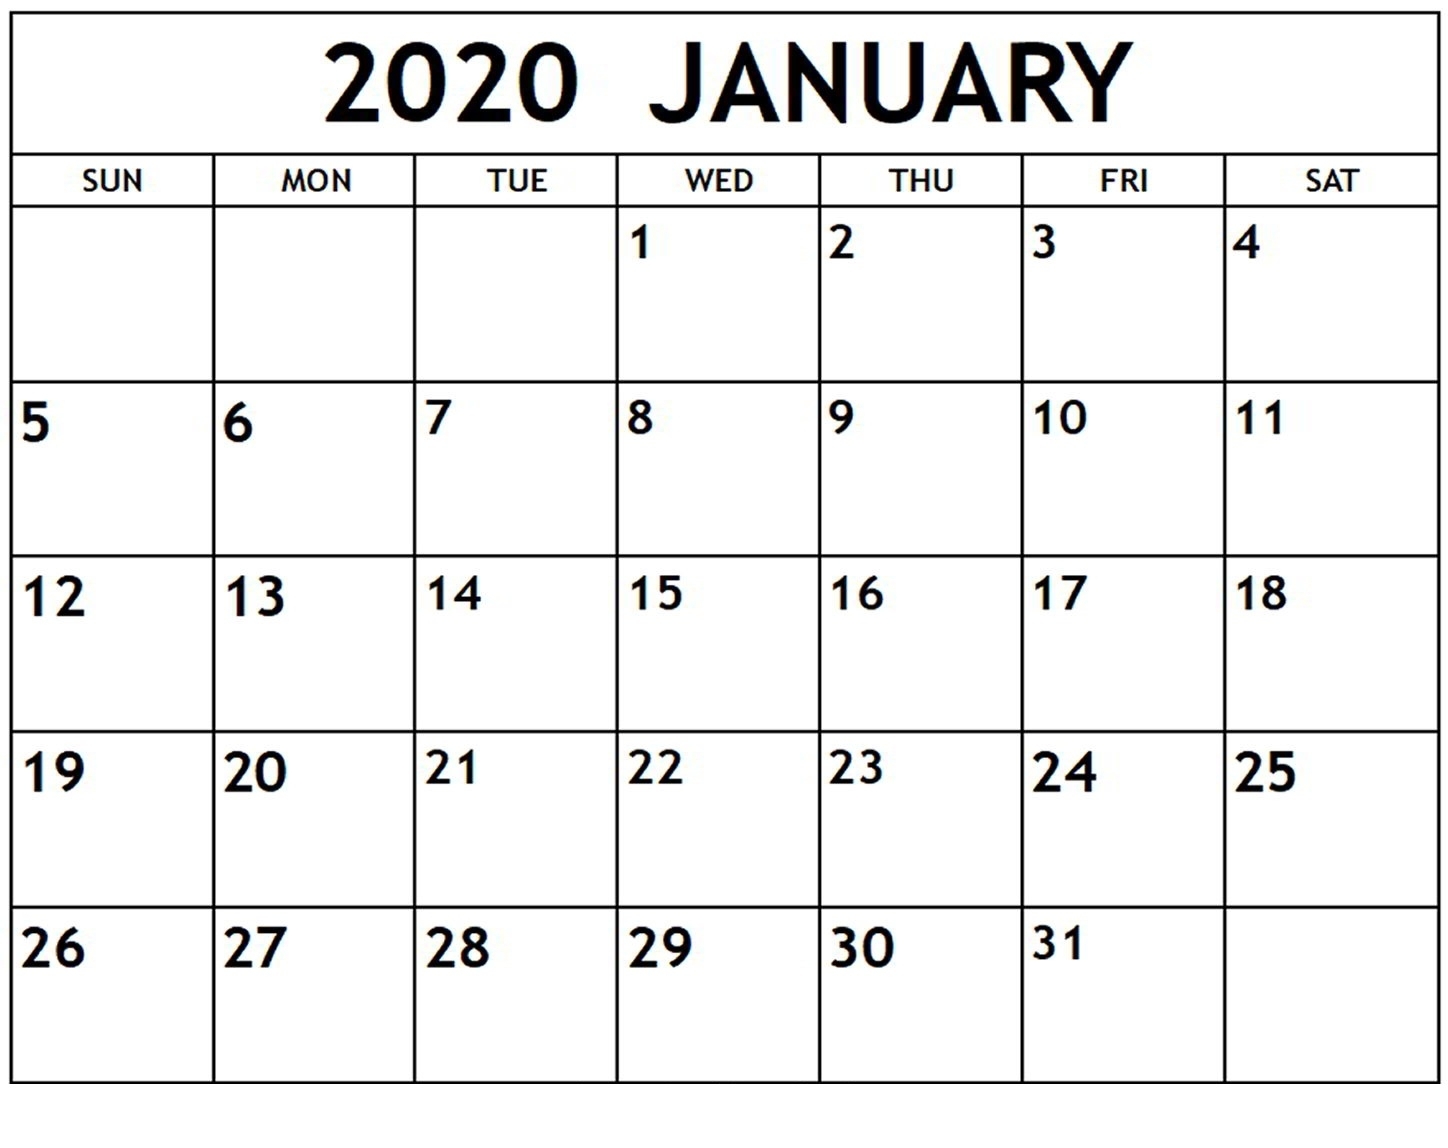 Cute January 2020 Calendar